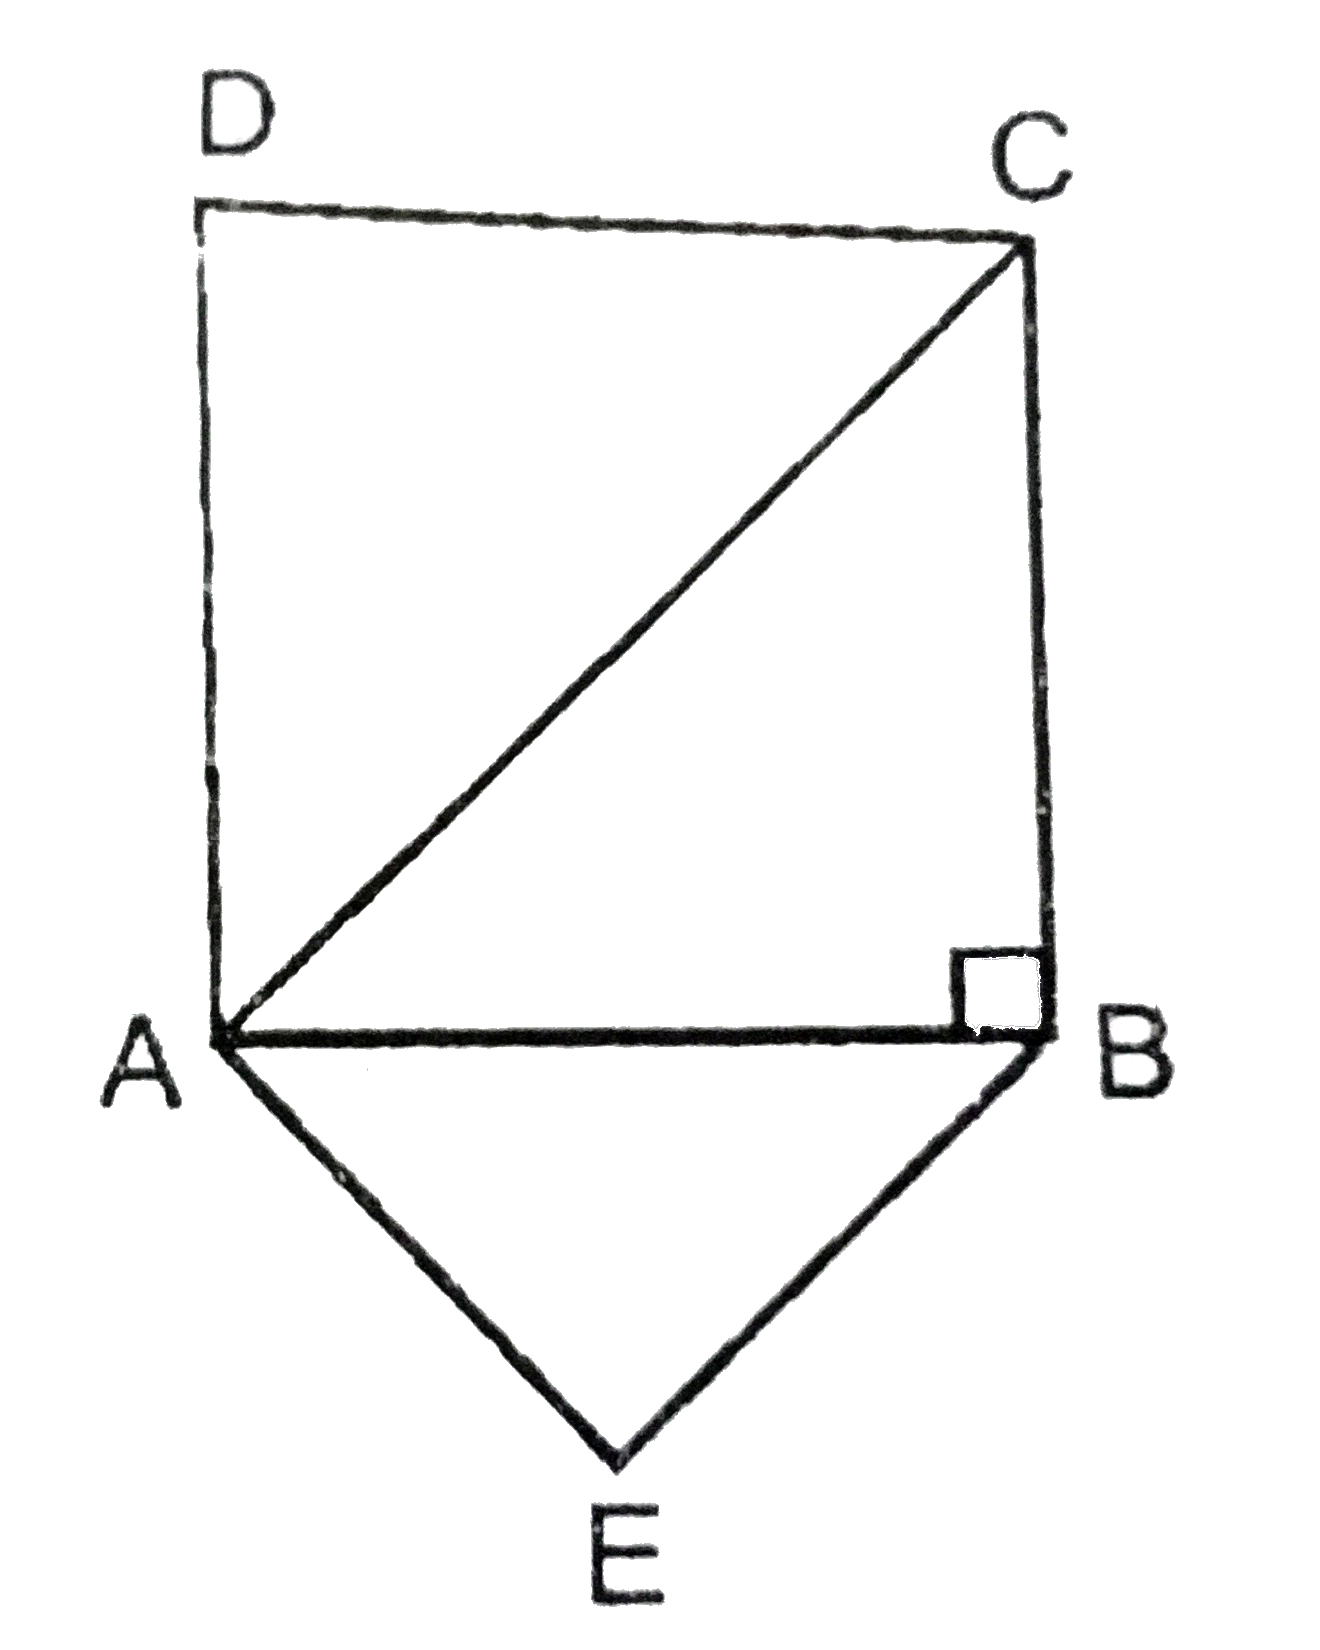 ABC एक समद्विबाहु त्रिभुज है जिसका कोण B समकोण है भुजाओं AC और AB पर समरूप त्रिभुज ACD और ABE बनाये गए है । DeltaABE और DeltaACD के क्षेत्रफलों का अनुपात ज्ञात करें ।